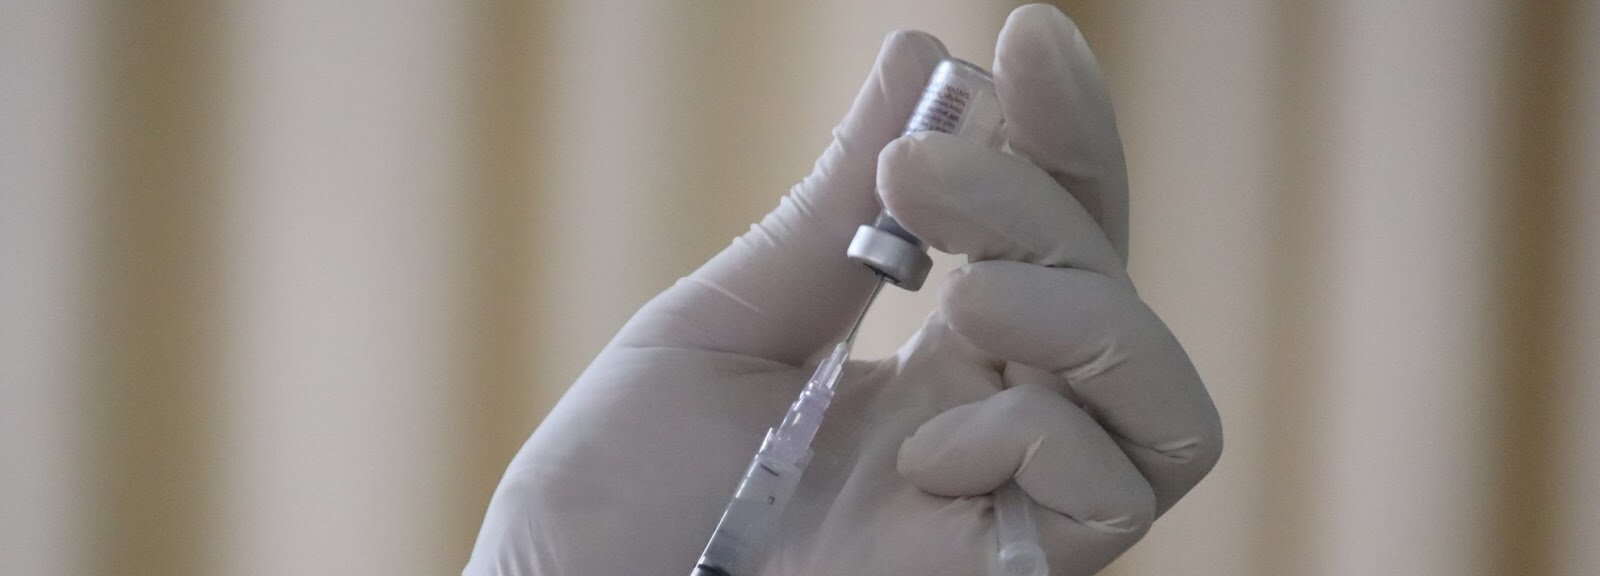 ワクチンの注射器の画像